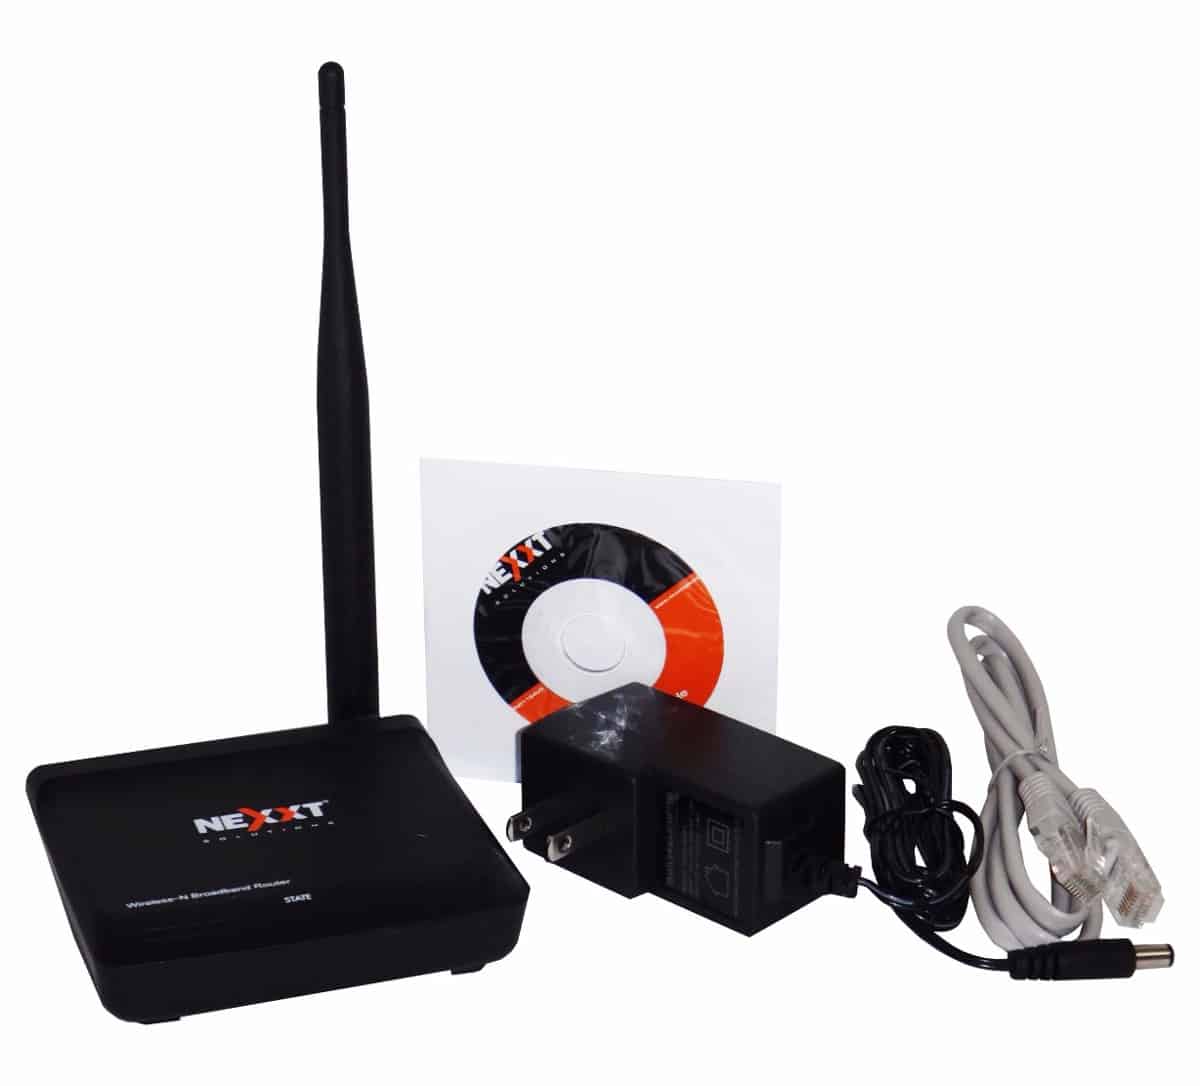 Router wifi 5dbi 150Mbps Nexxt Nyx150